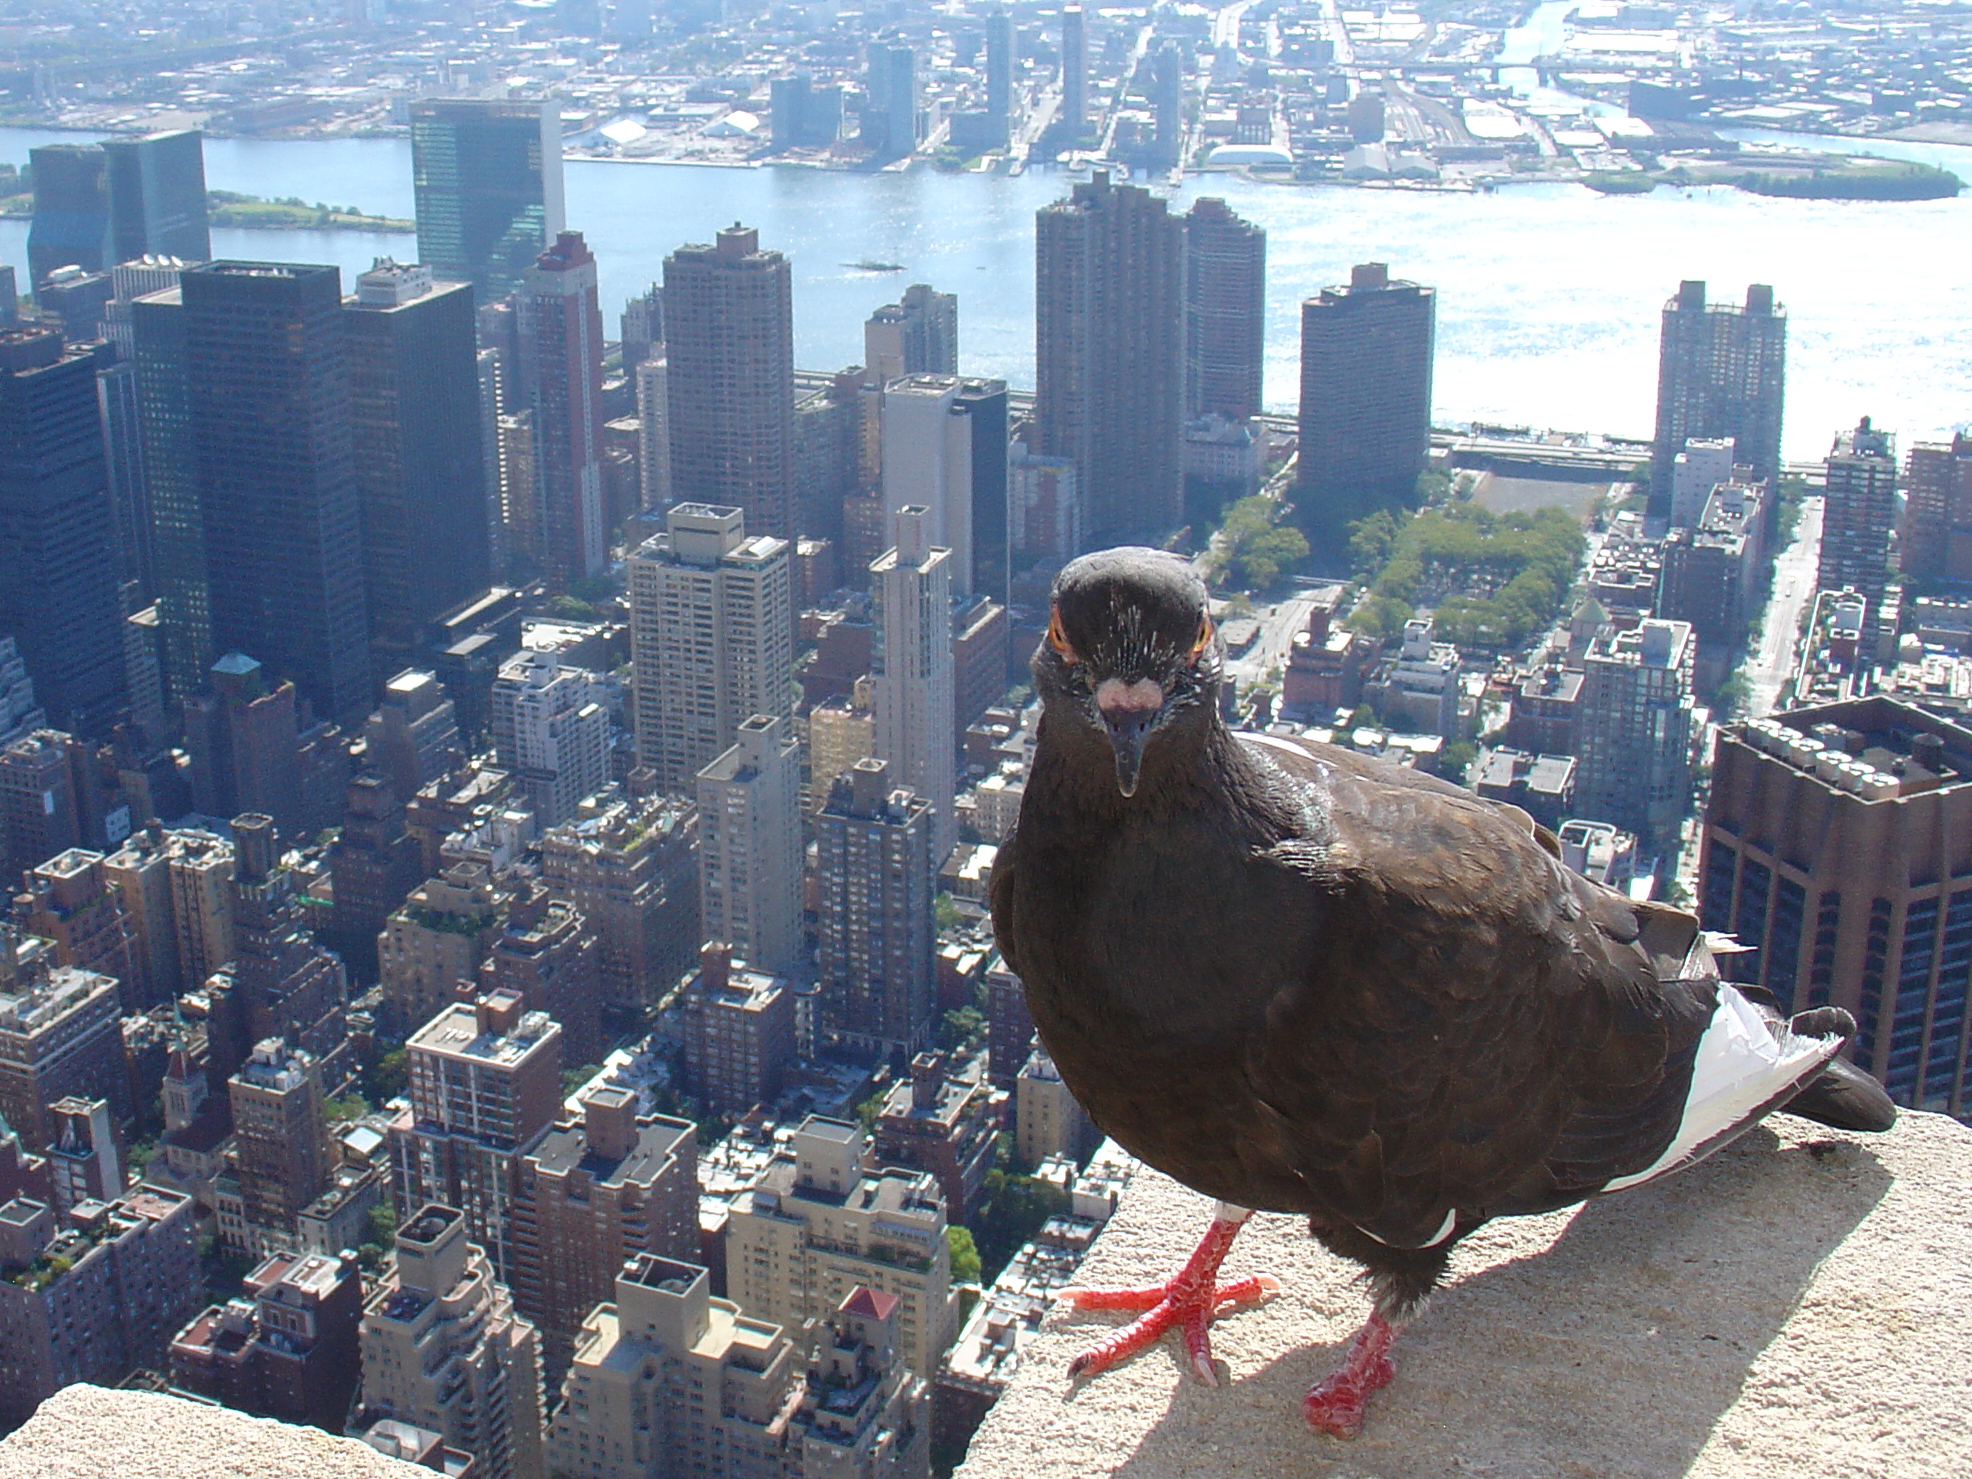 "Behavior of New York Bird"